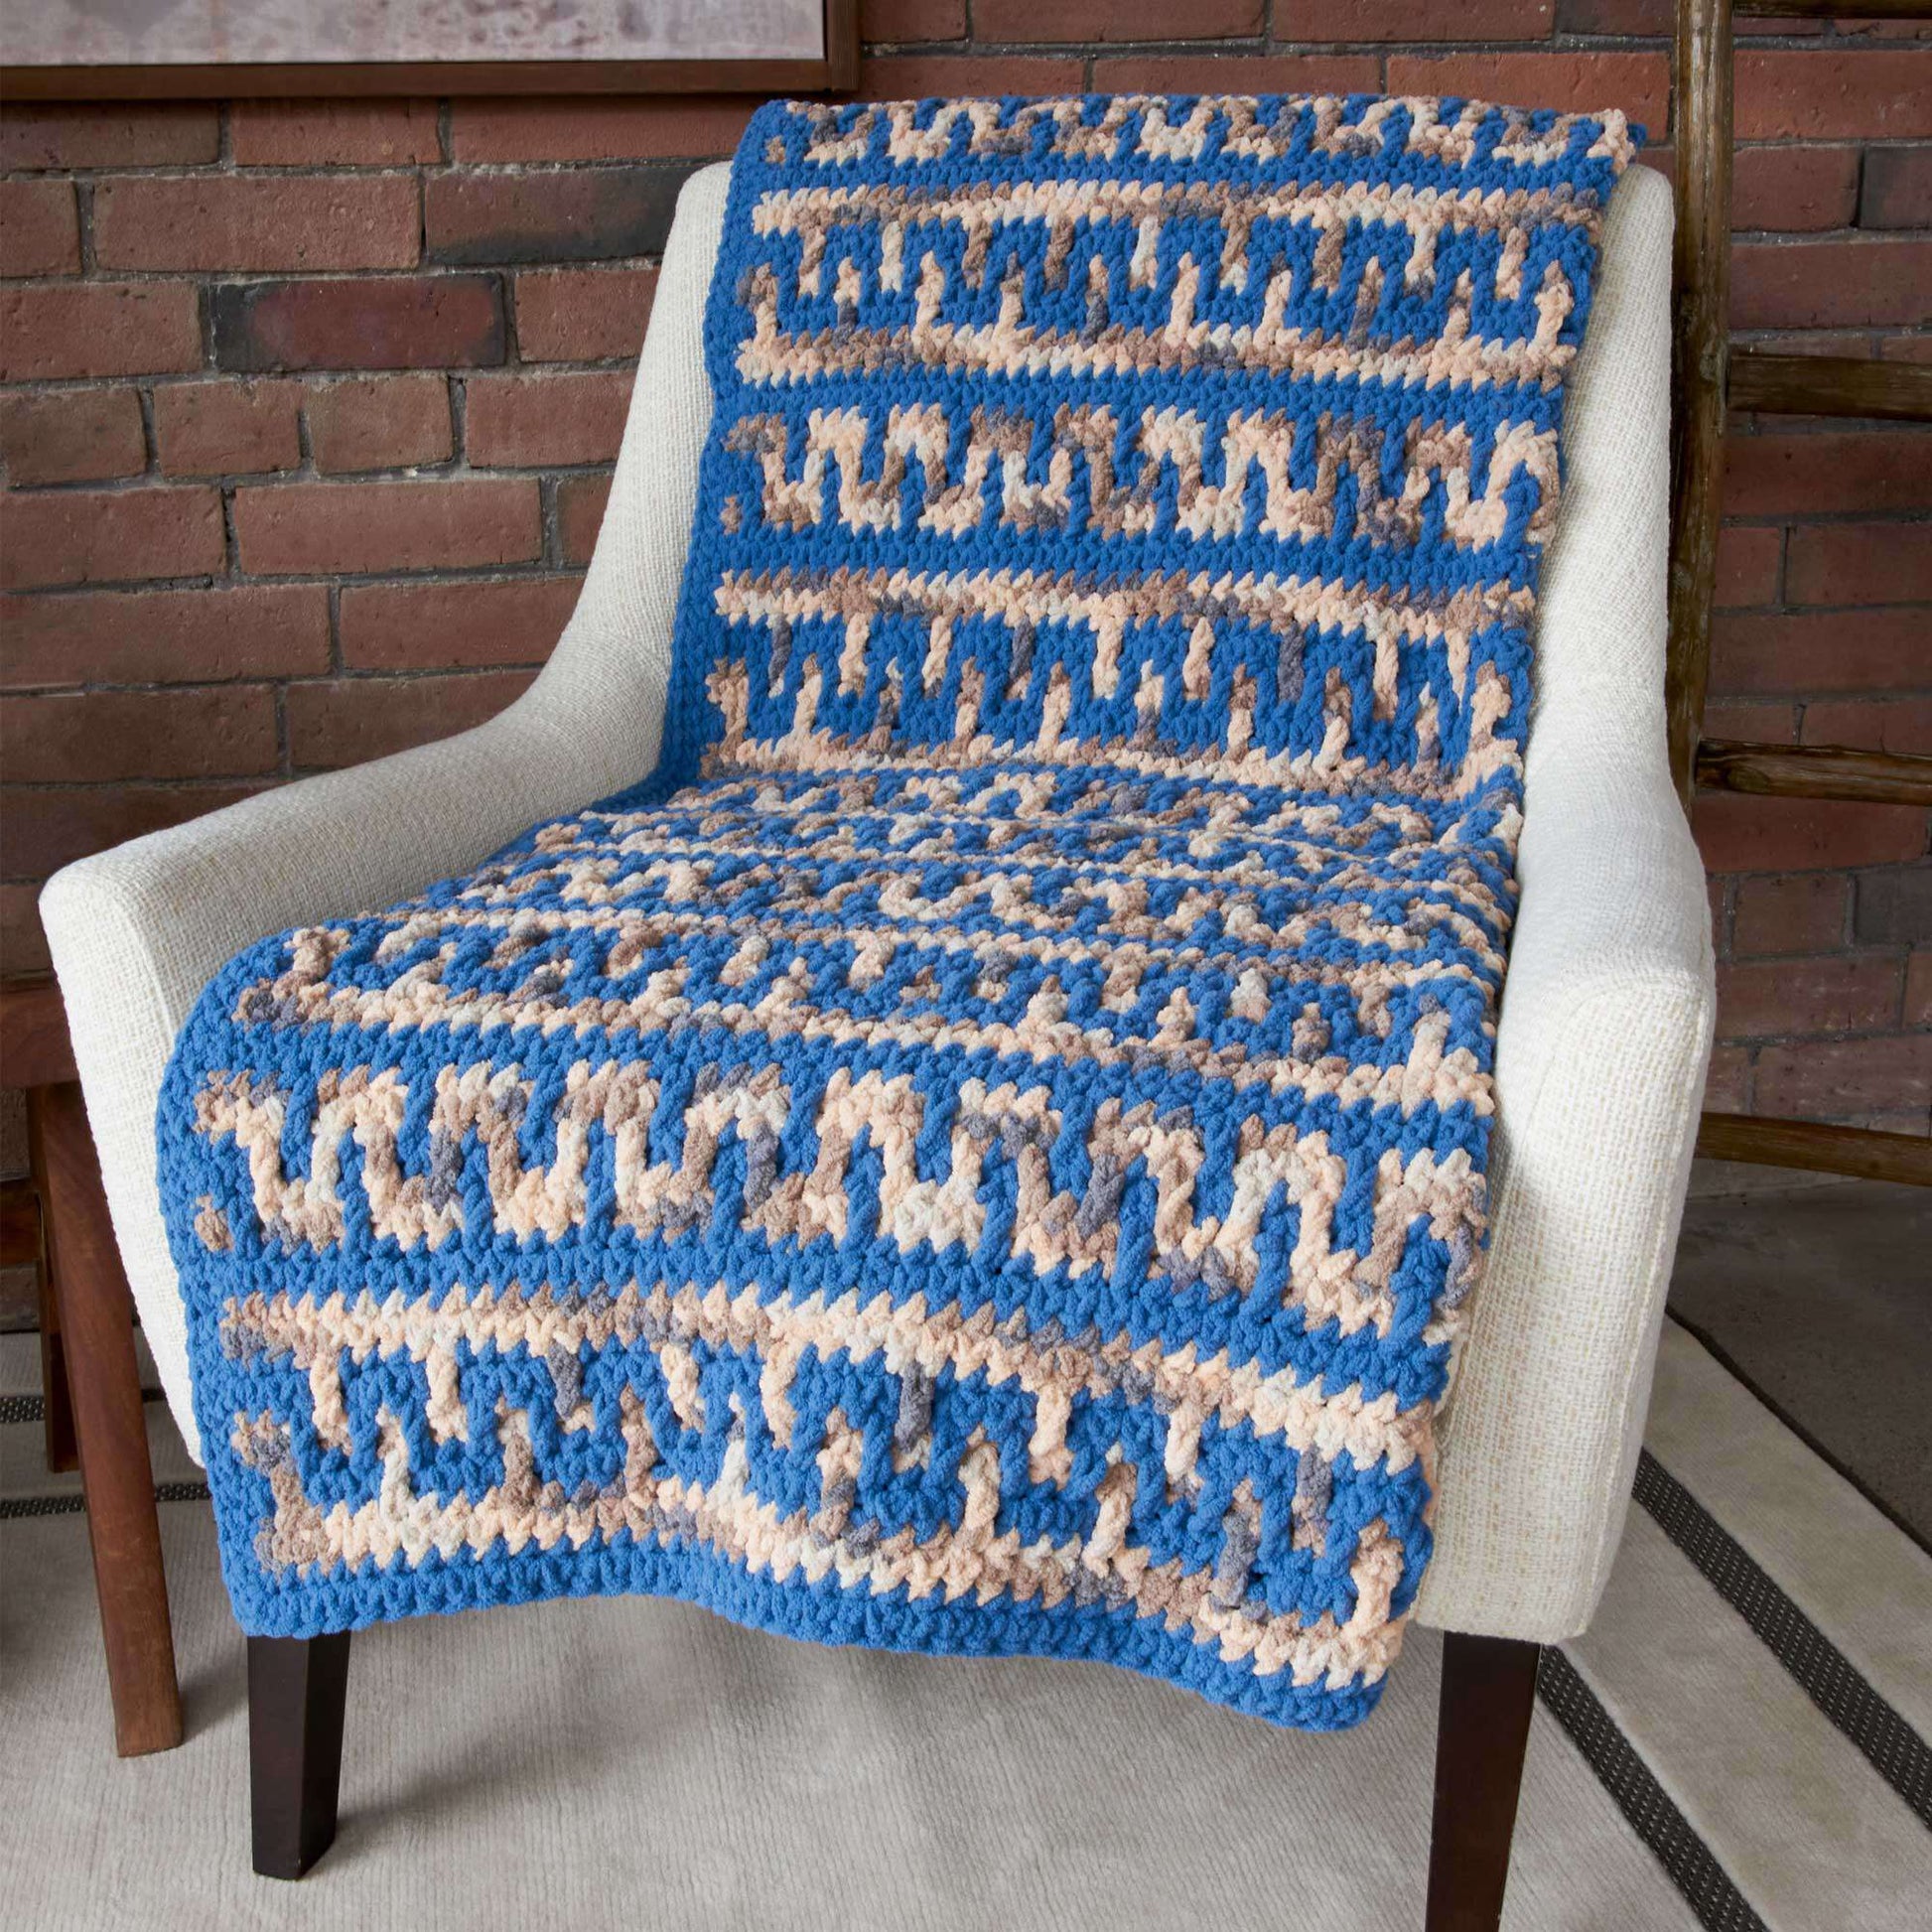 Free Bernat Greek Key Mosaic Crochet Blanket Pattern